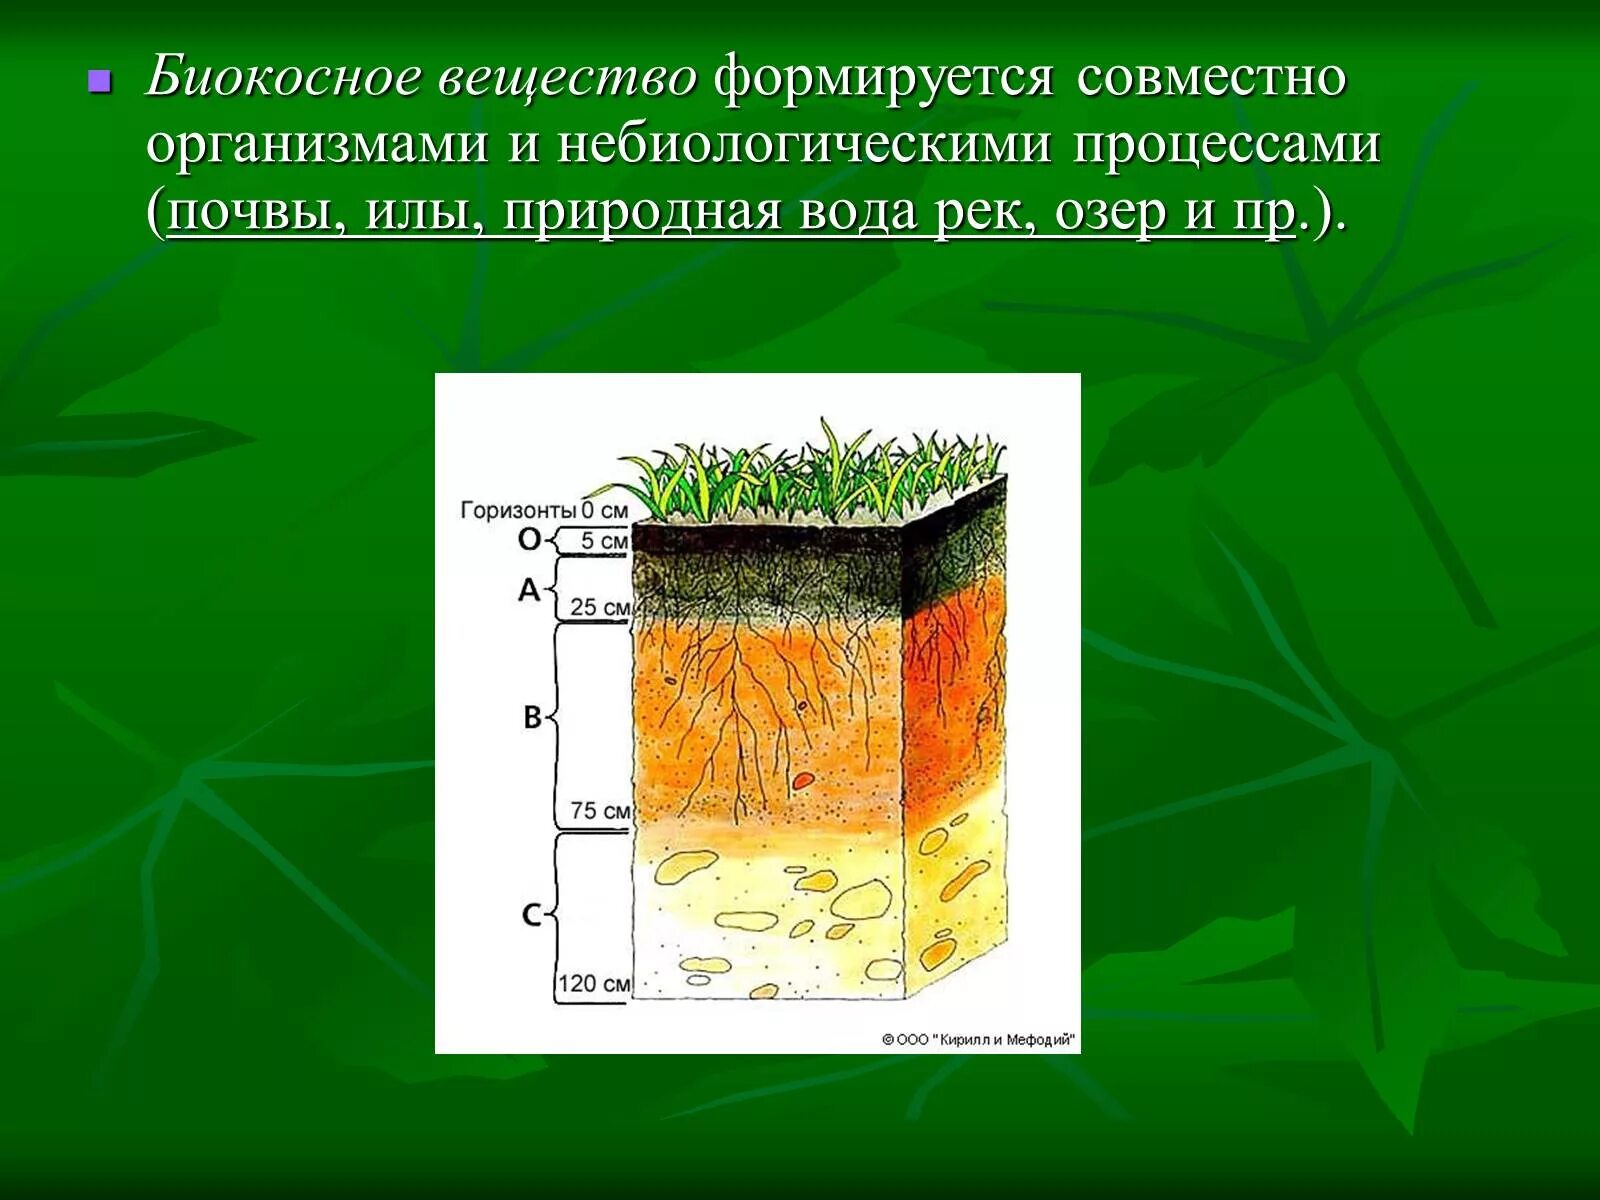 Примерами биокосного вещества являются. Костное вещество и биокосное вещество. Юилеосное вещество. Биокосное вещество биосферы. Почва биокосное вещество.